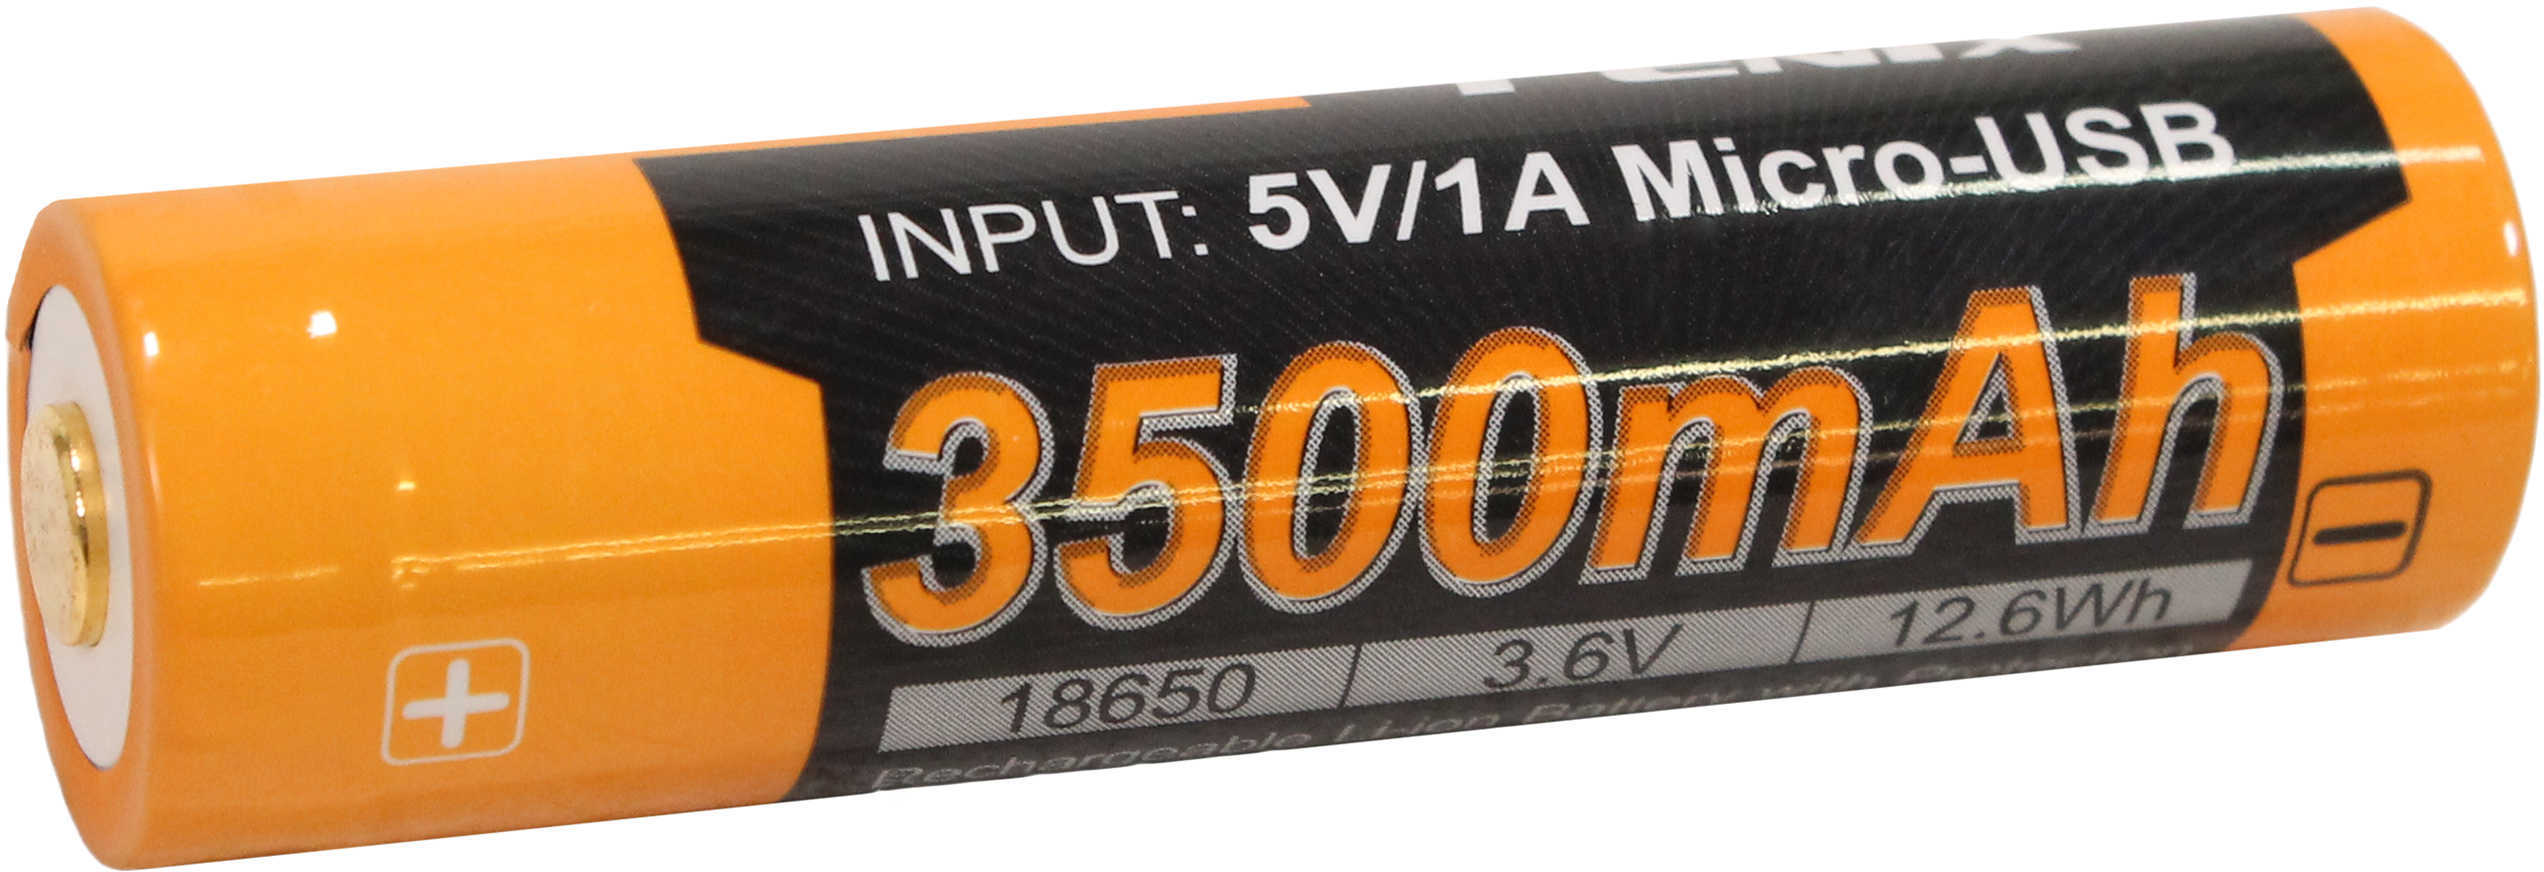 Fenix Lights Flashlights Rechargeable Batteries 18650 (3.6V) 3500U mAh USB Md: ARB-L18-3500U